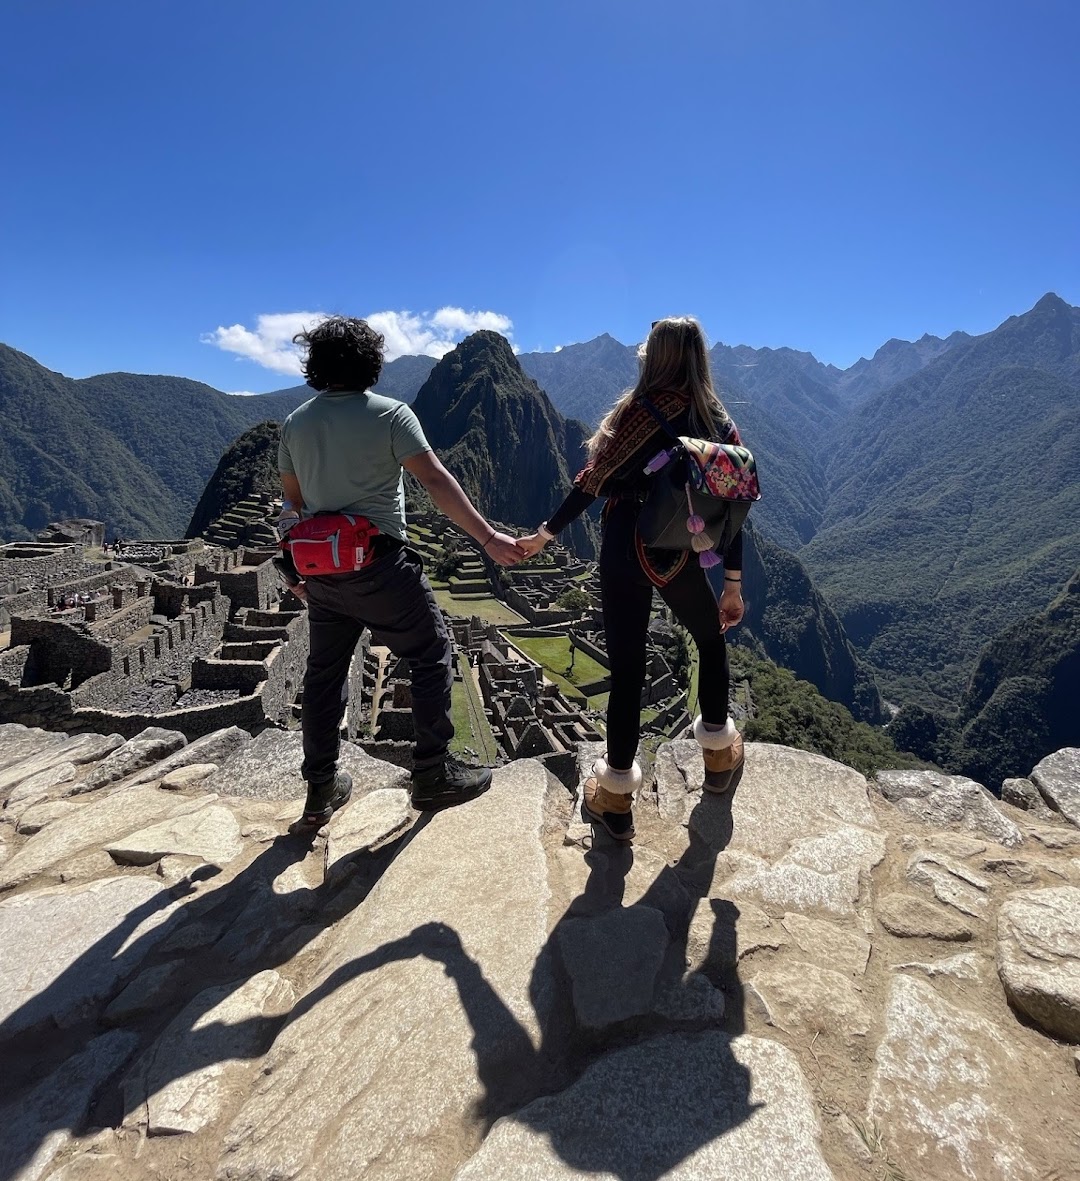 Adventure Peru Tours